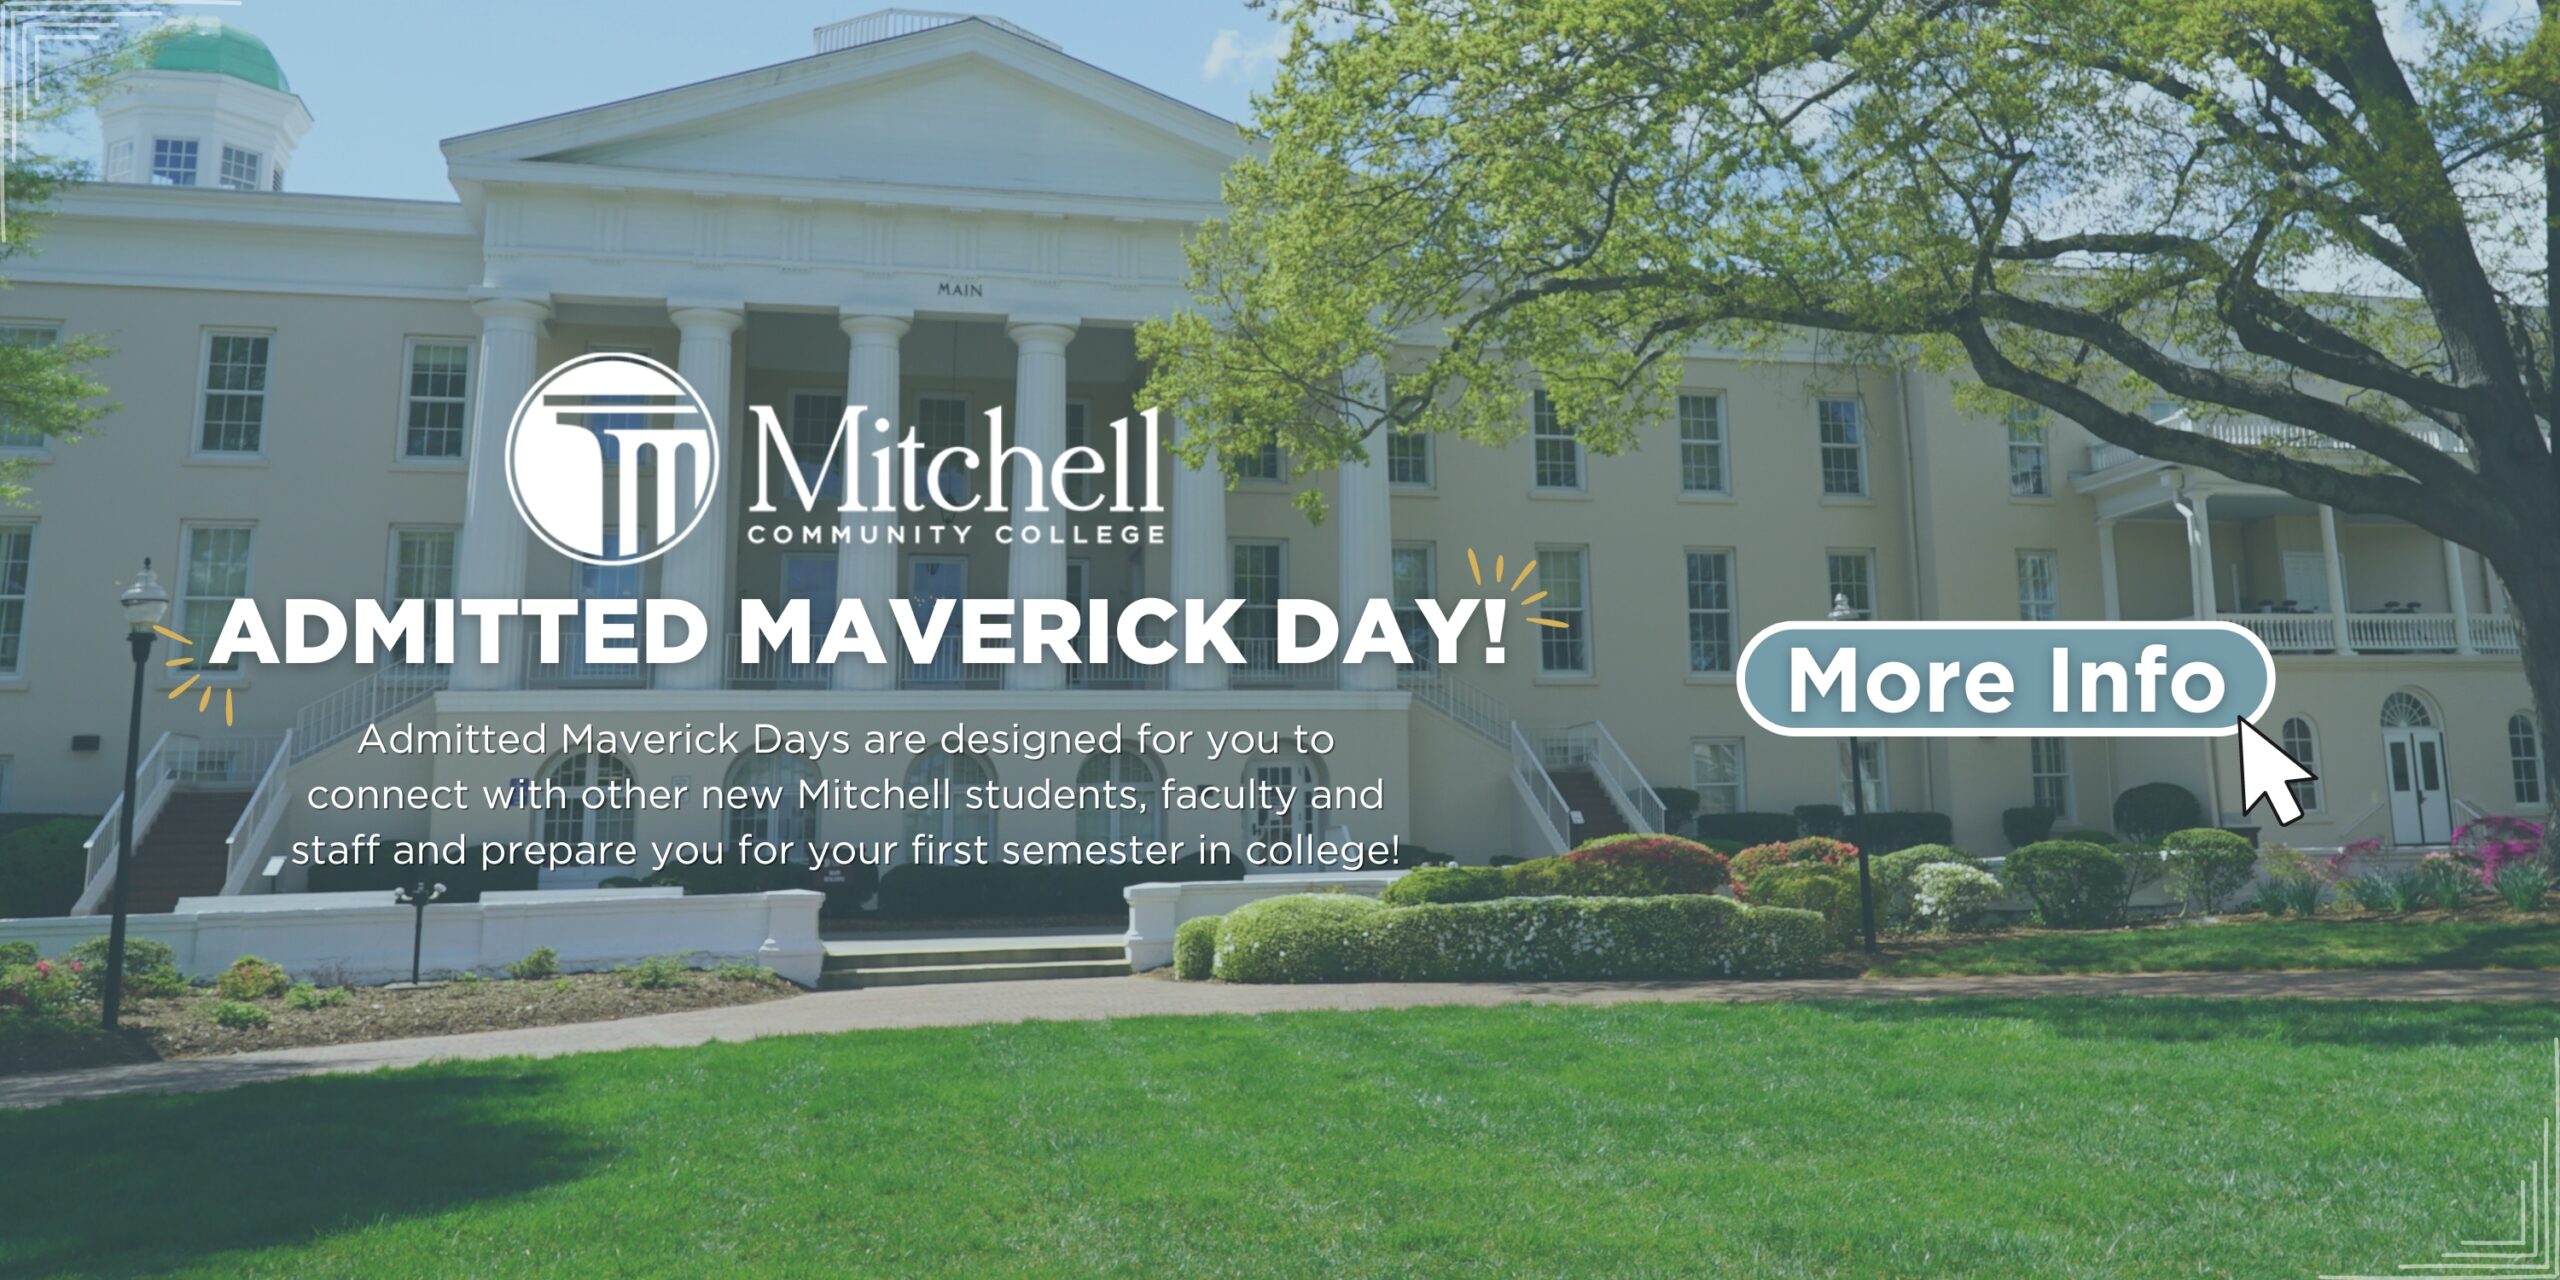 Kabul Edilen Maverick Günü hakkında daha fazla bilgi edinmek için bu başlığa tıklayın!